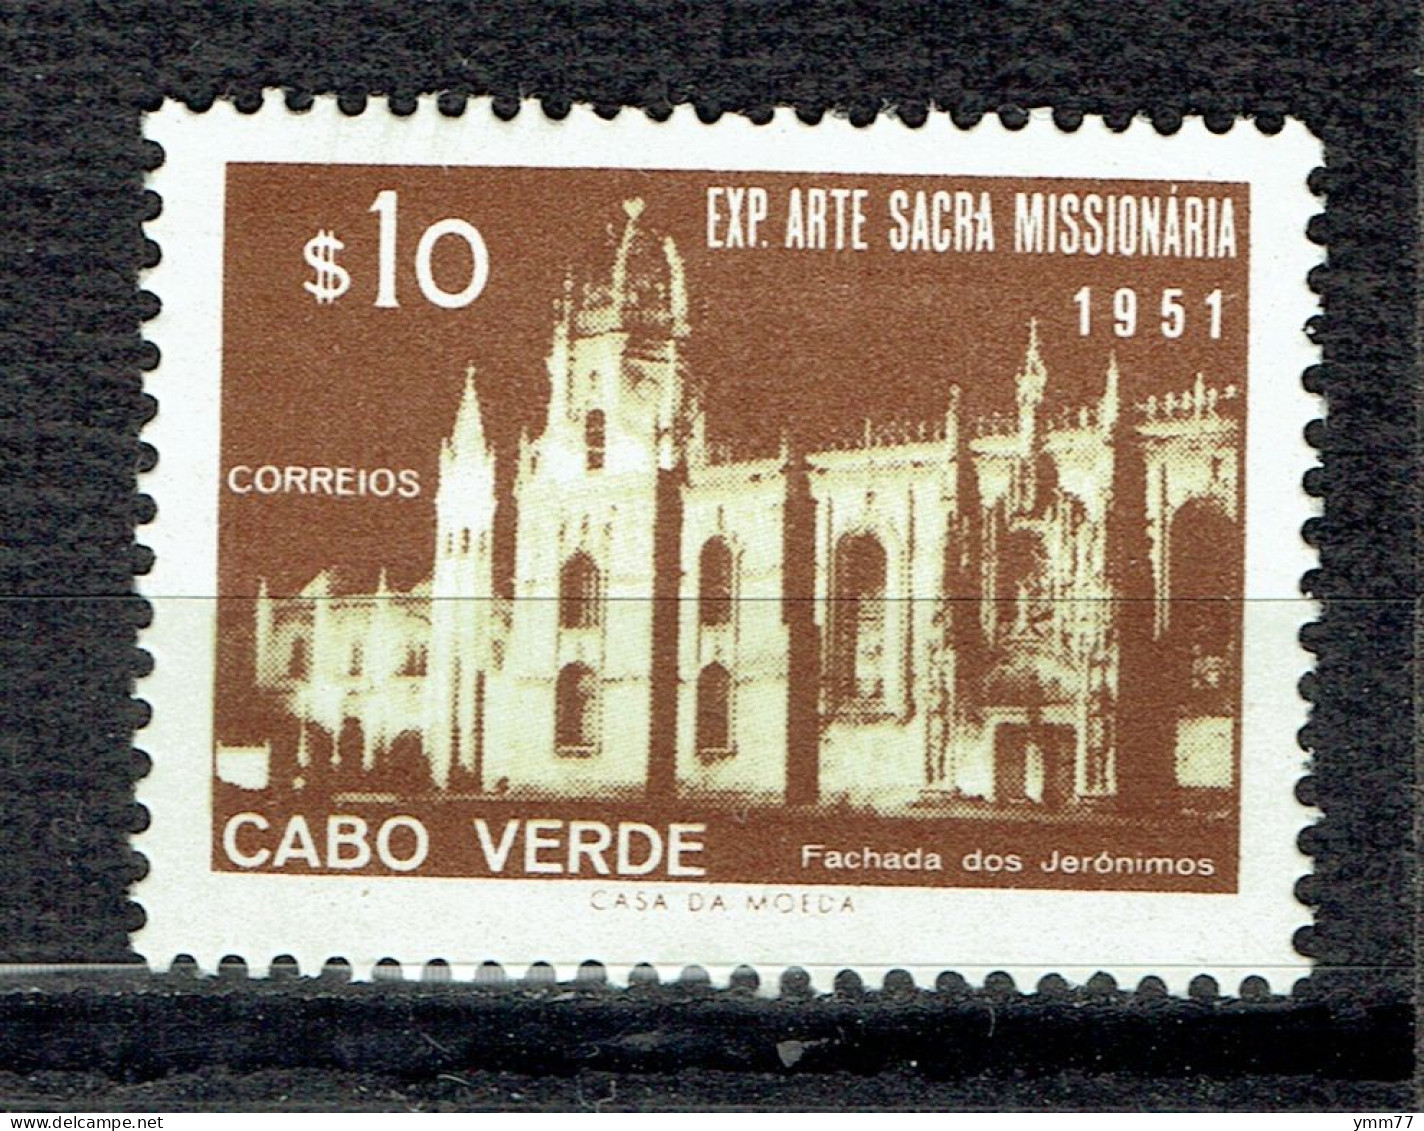 Exposition D'art Missionnaire à Lisbonne : Couvent Des Jéronimes - Kapverdische Inseln